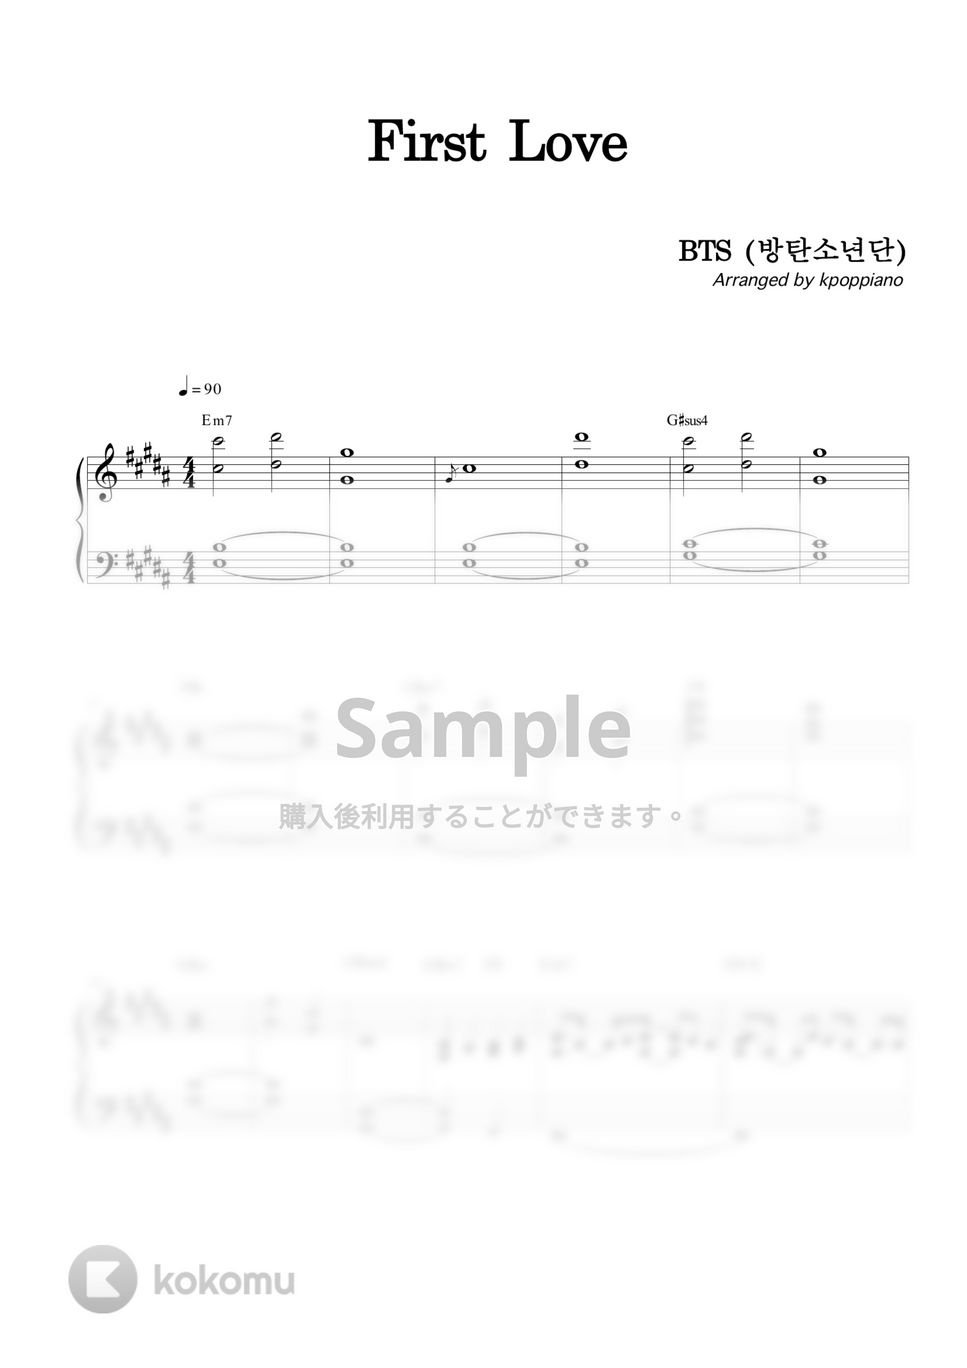 防弾少年団 (BTS) - First Love (SUGA Solo) by KPOP PIANO